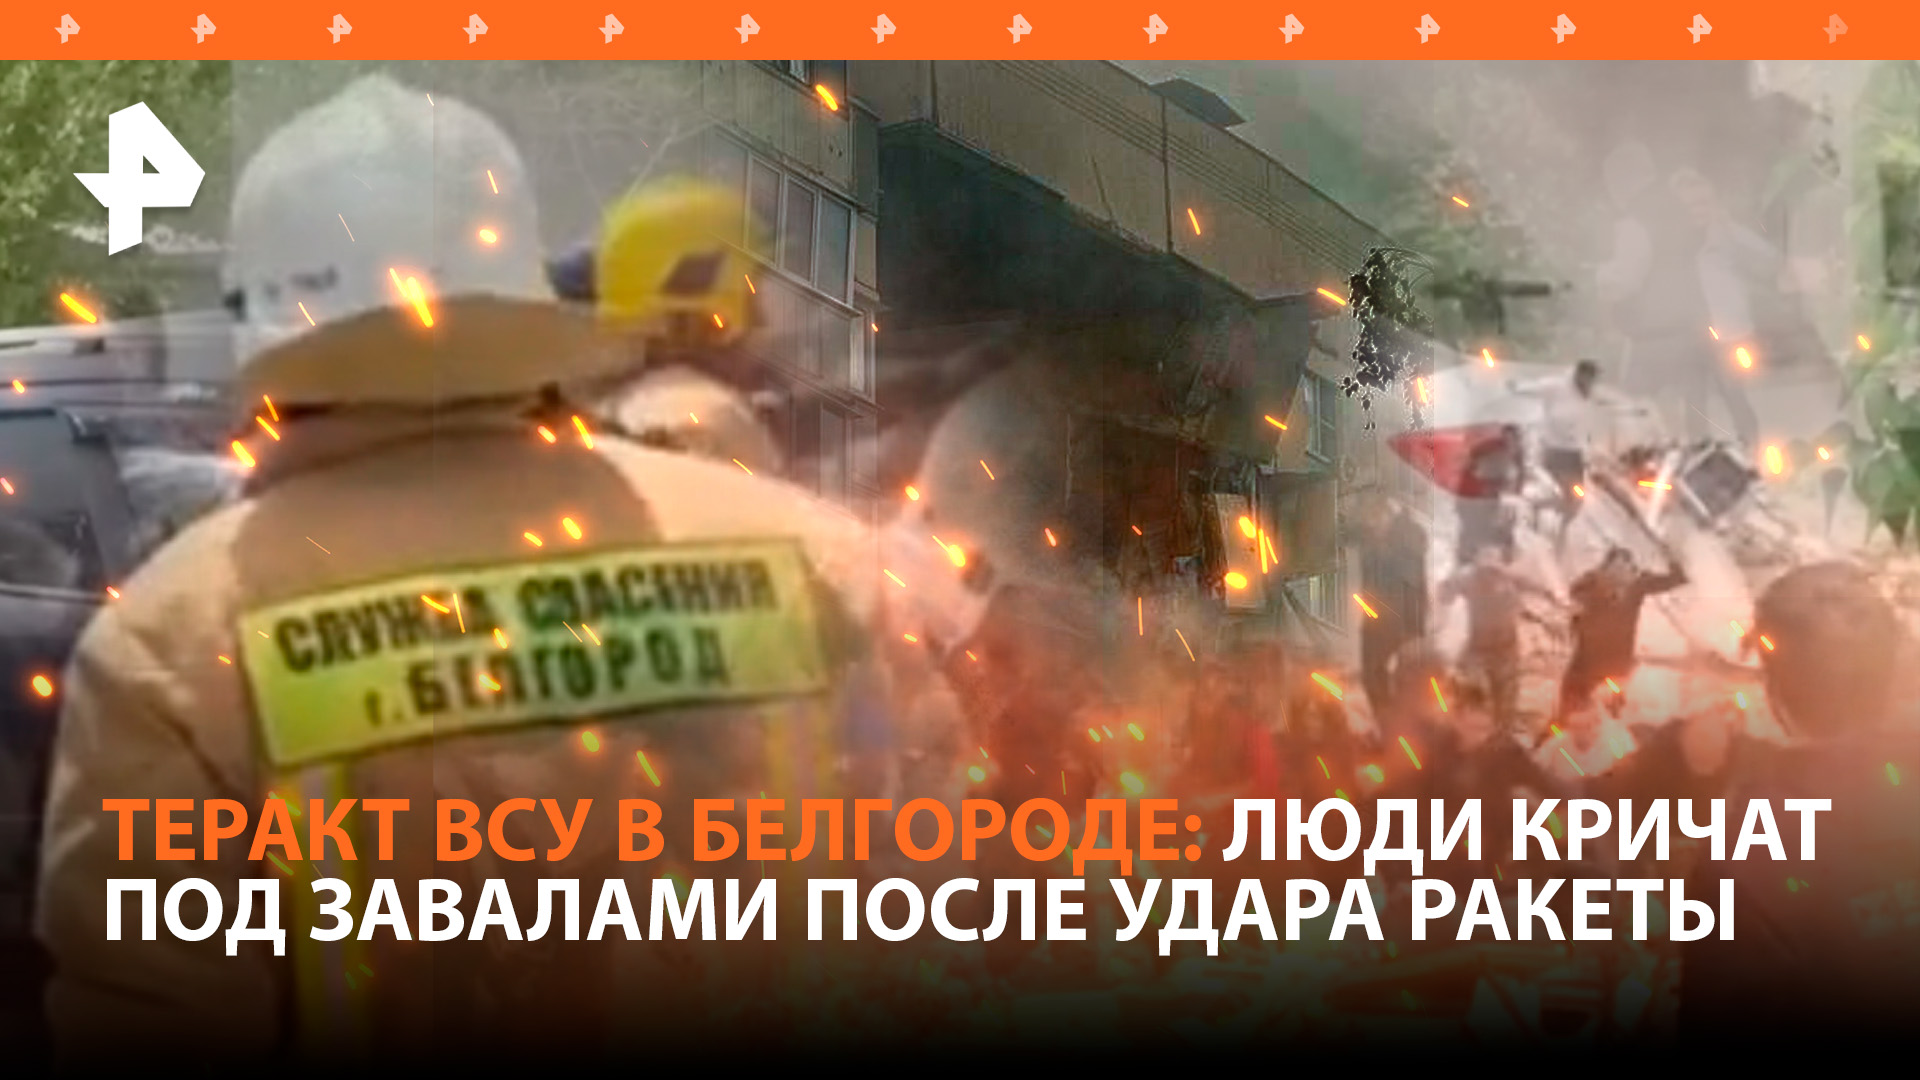 "Кровавое звено в цепочке преступлений ВСУ": подъезд дома в Белгороде обрушился после атаки врага